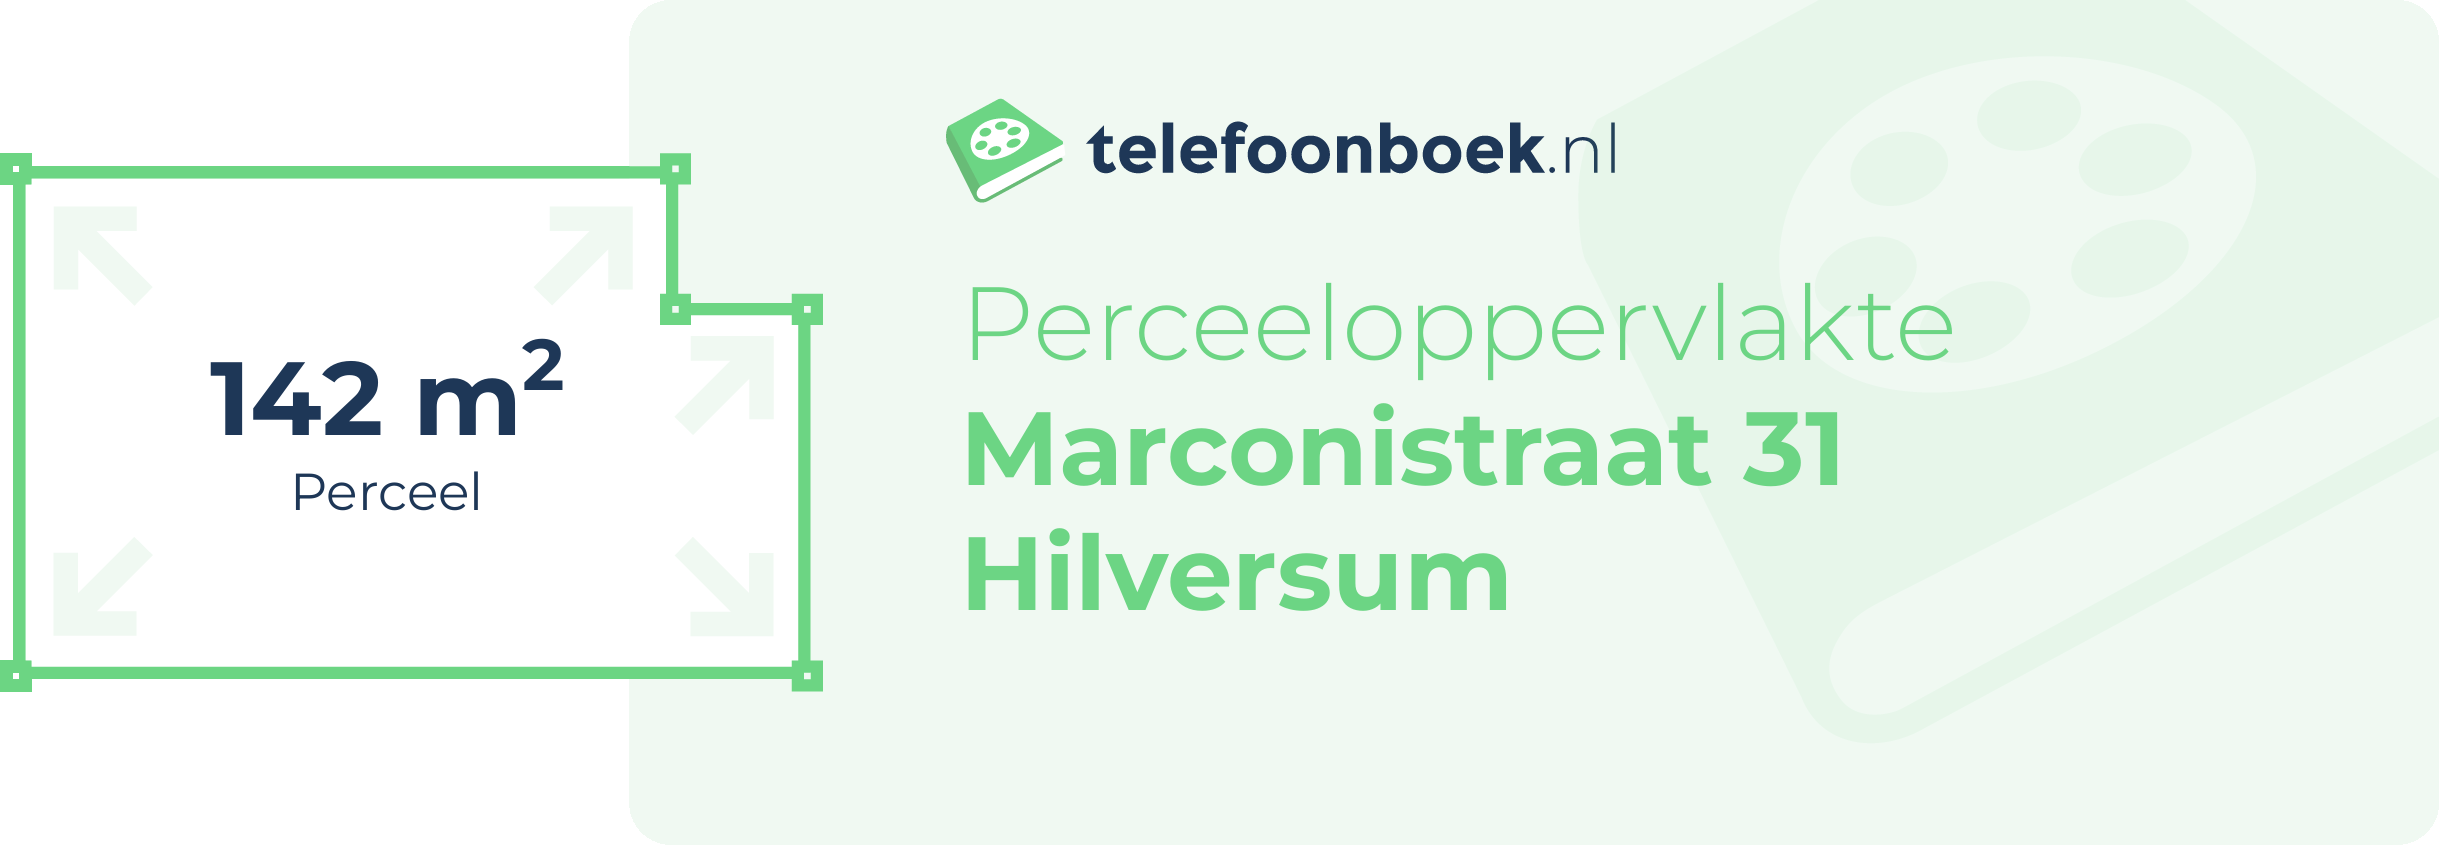 Perceeloppervlakte Marconistraat 31 Hilversum